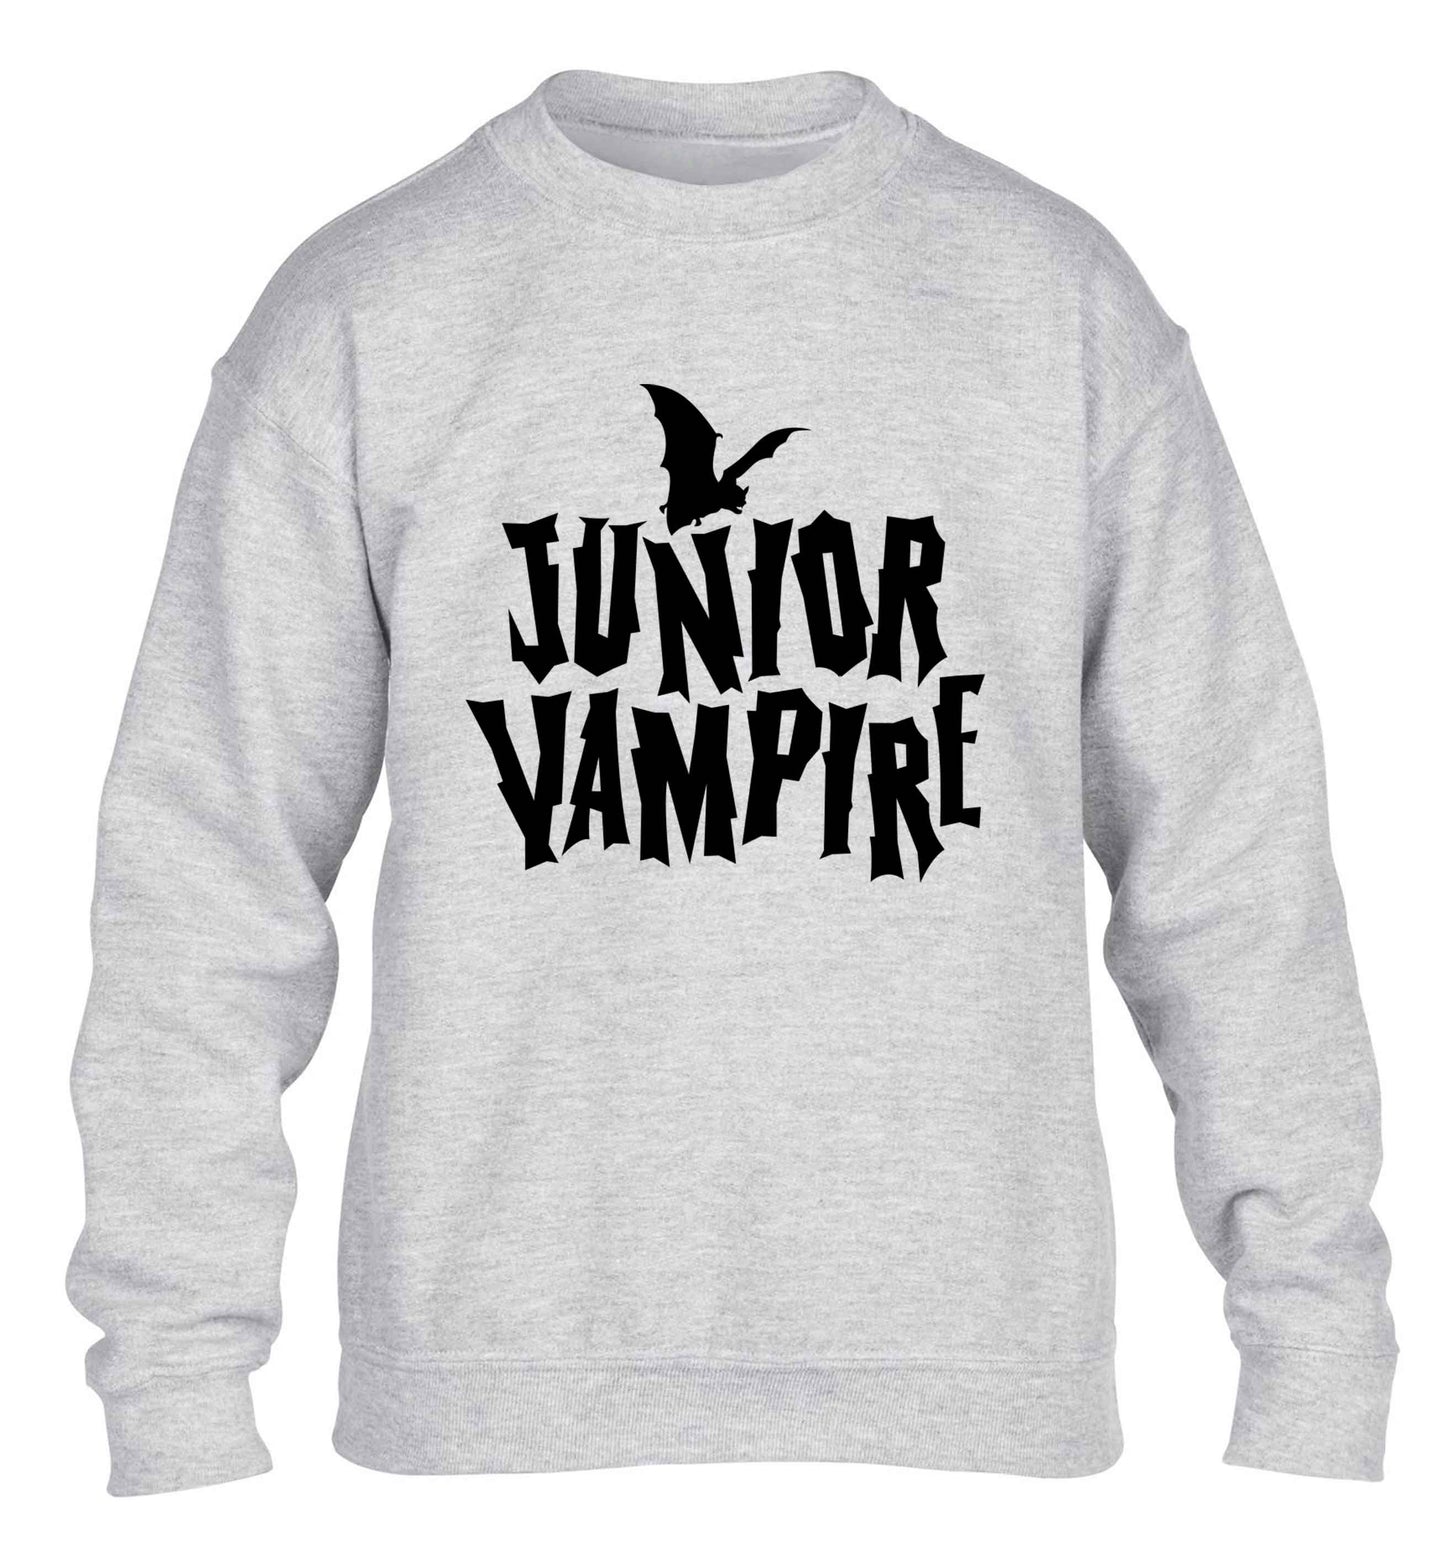 Junior vampire children's grey sweater 12-13 Years